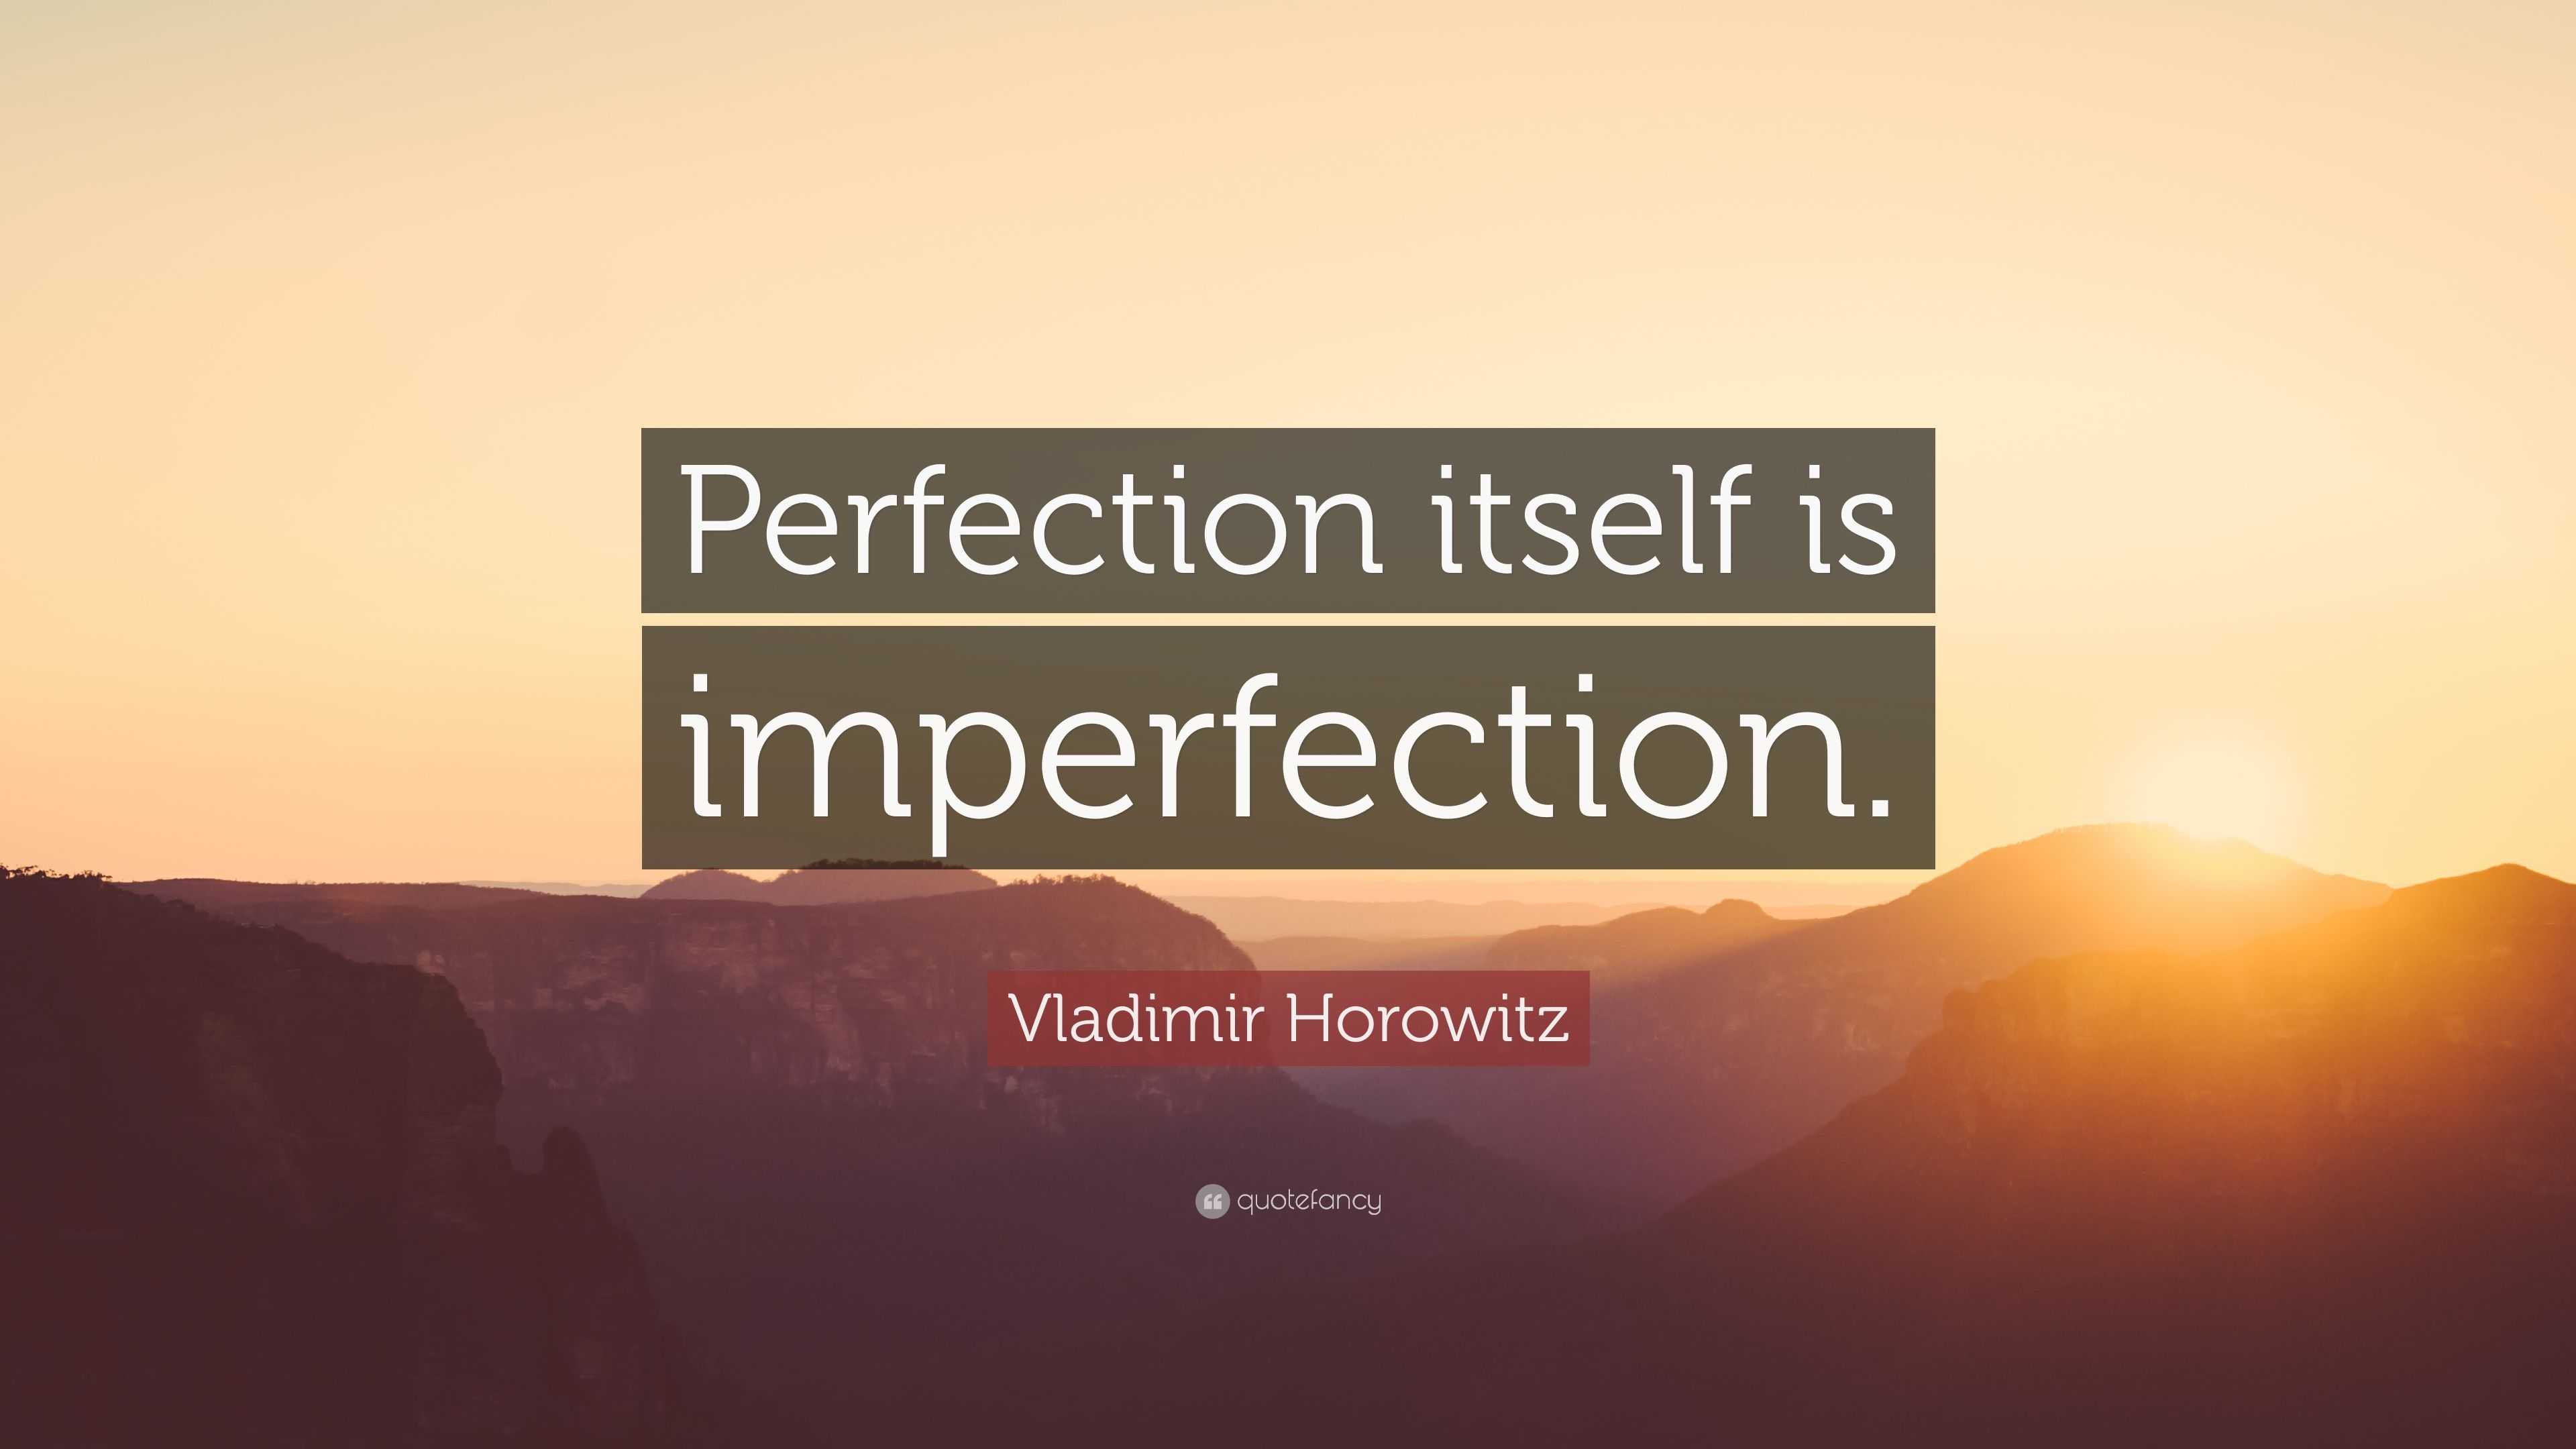 Vladimir Horowitz Quote: “Perfection itself is imperfection.”